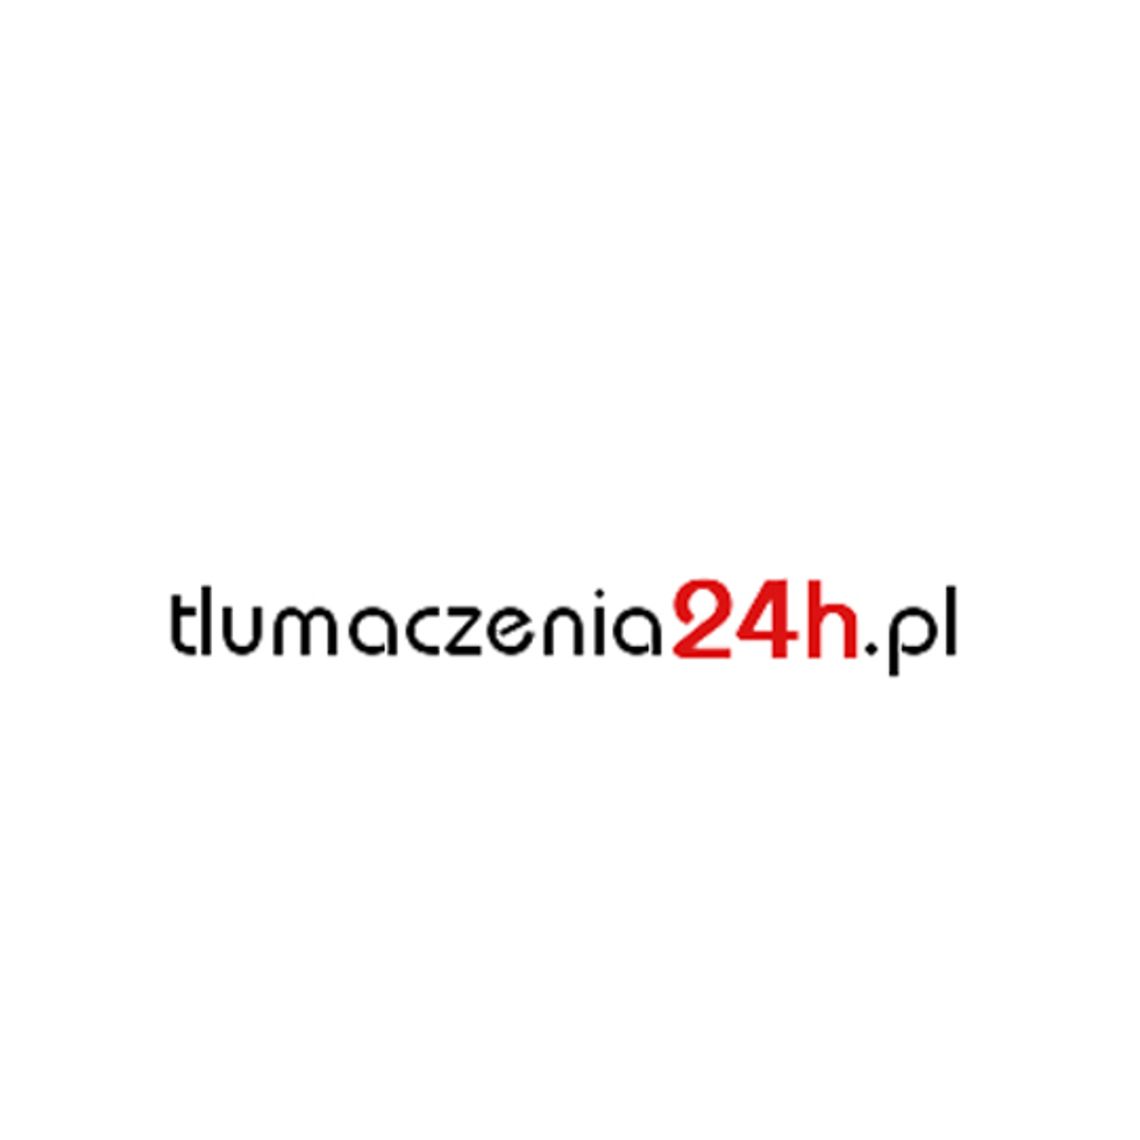 Biuro Tłumaczeń Języka Angielskiego | tlumaczenia24h.pl